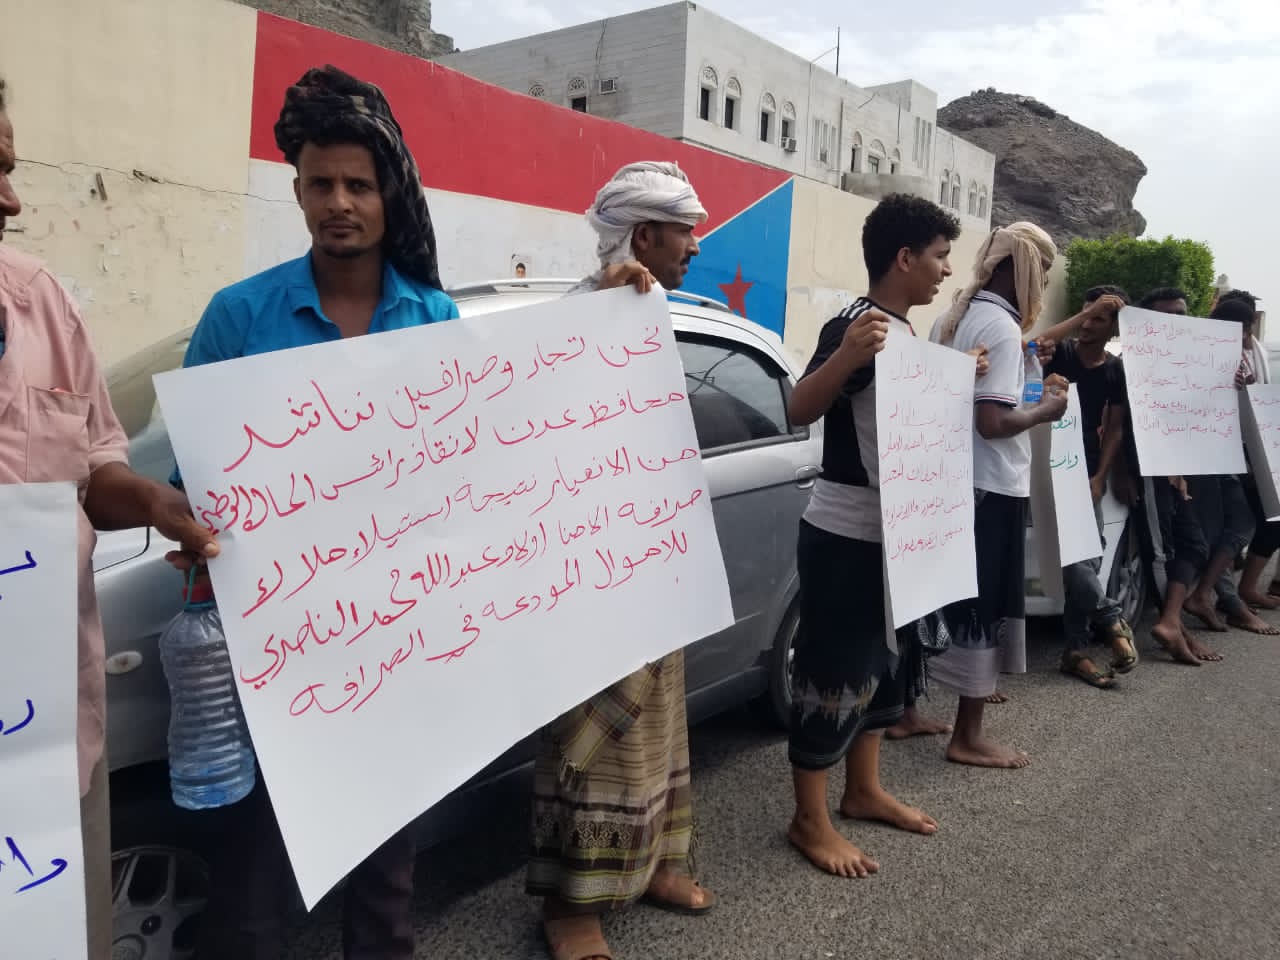 عدن : وقفة احتجاجية ضد شركة الأمناء أمام المحكمة التجارية والمحتجون يطالبون بإنصافهم